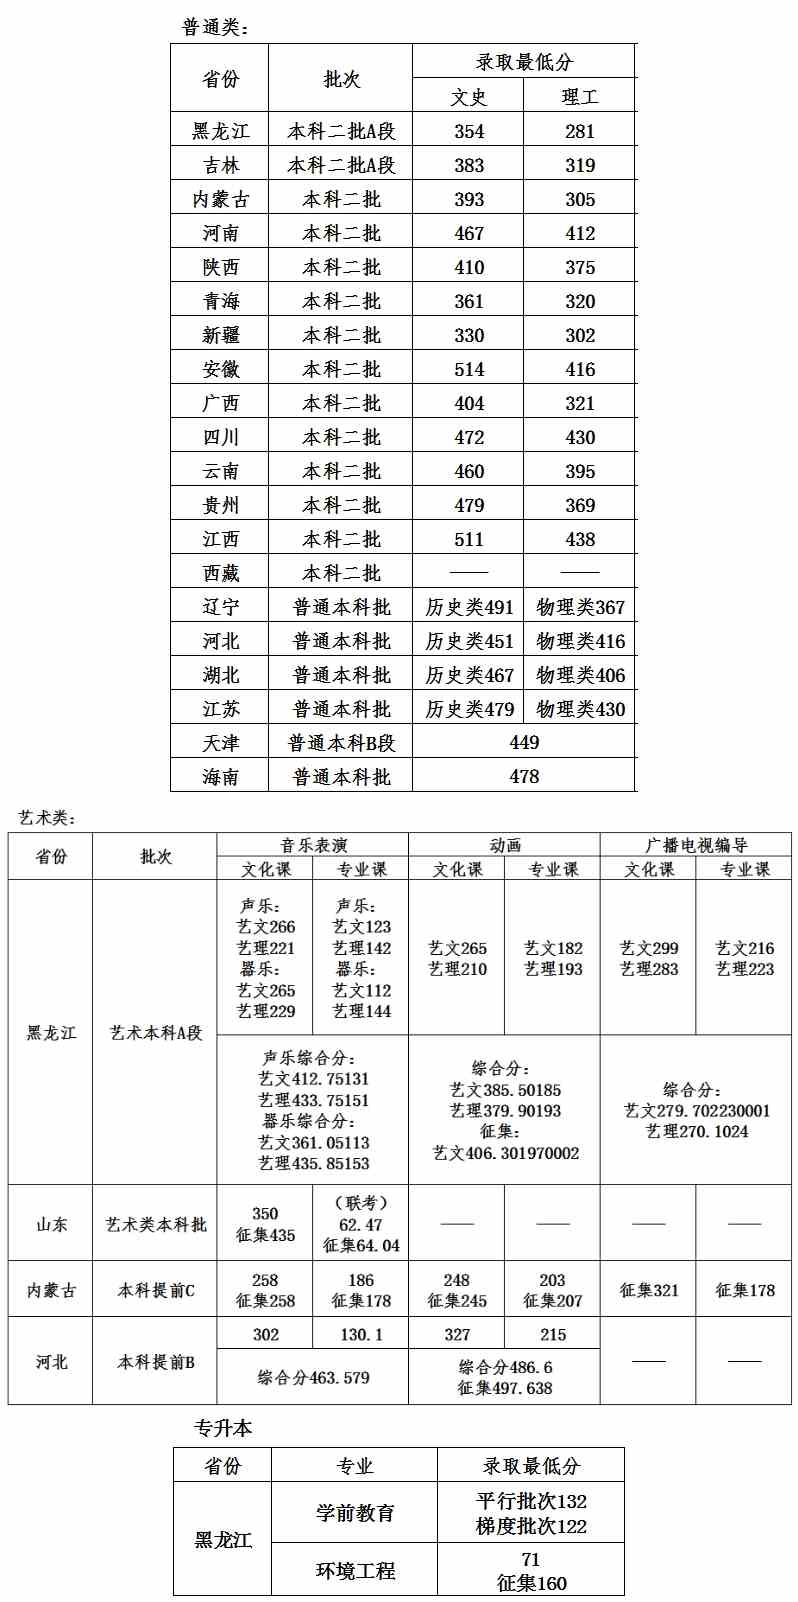 2021年哈尔滨石油学院各省区最低录取分数-招生信息022223233333.jpg